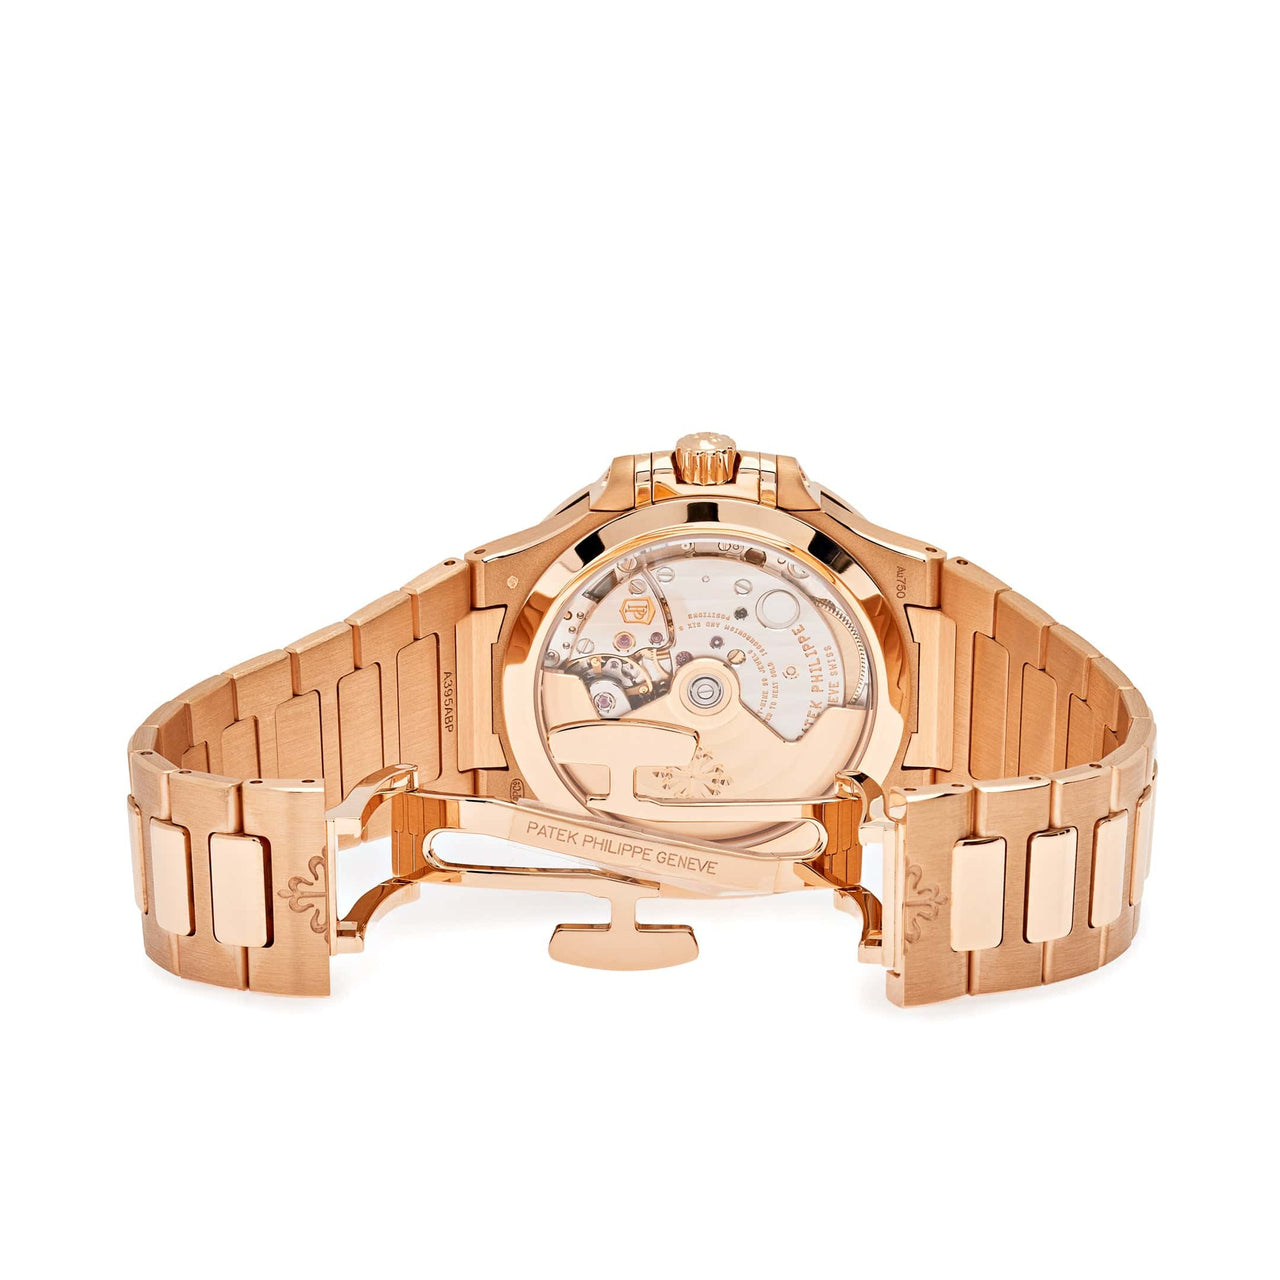 Luxury Watch Patek Philippe Nautilus 35.2mm Rose Gold 7118/1200R-010 Wrist Aficionado